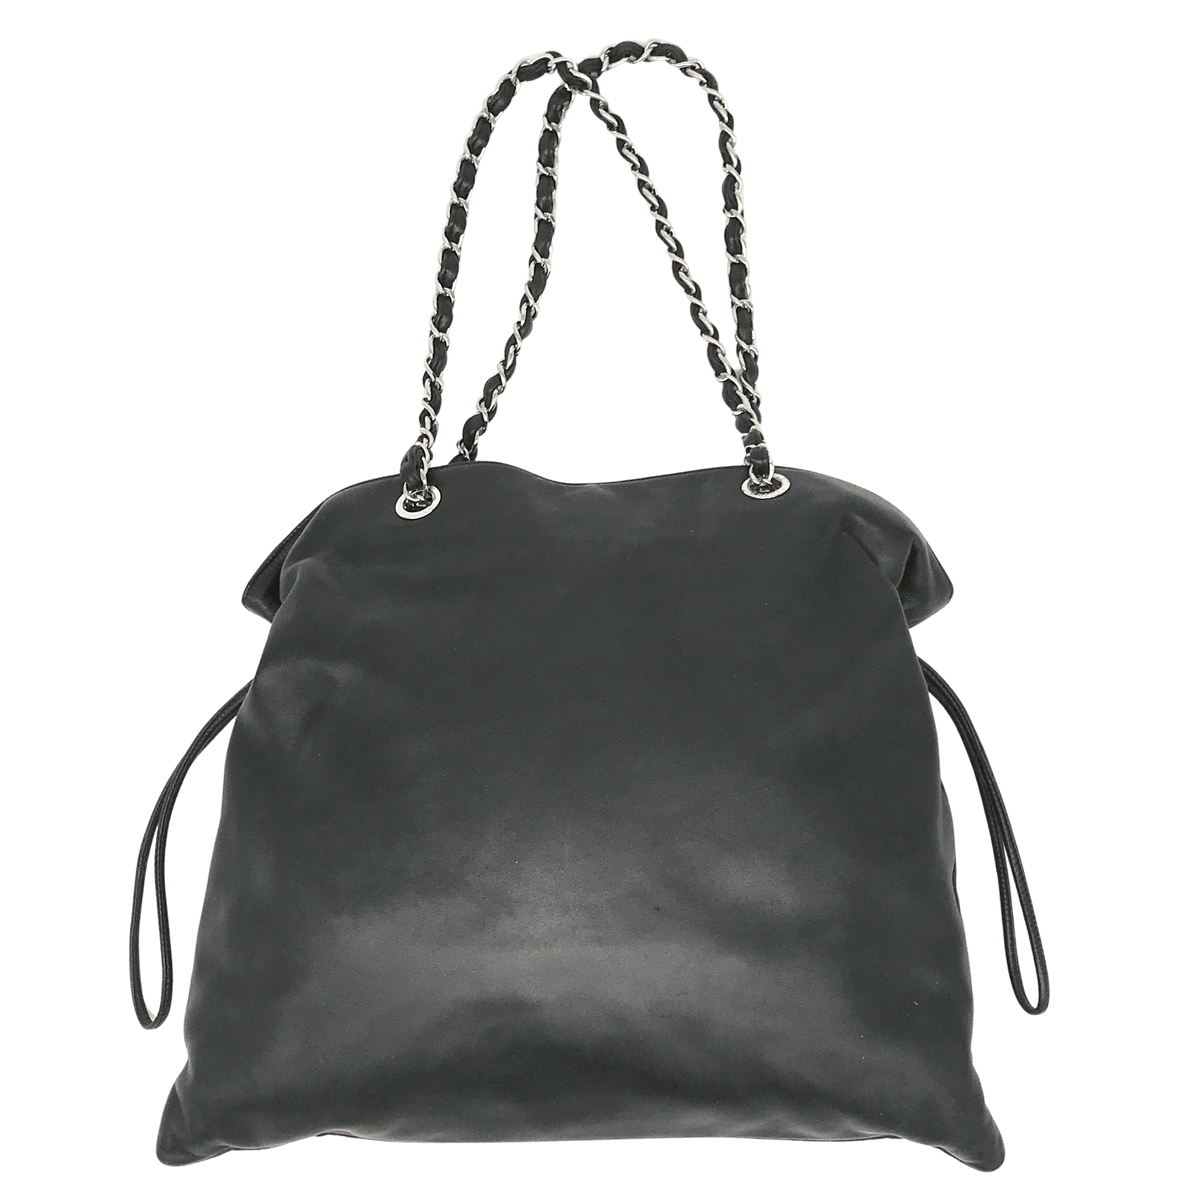 chanel studded bag